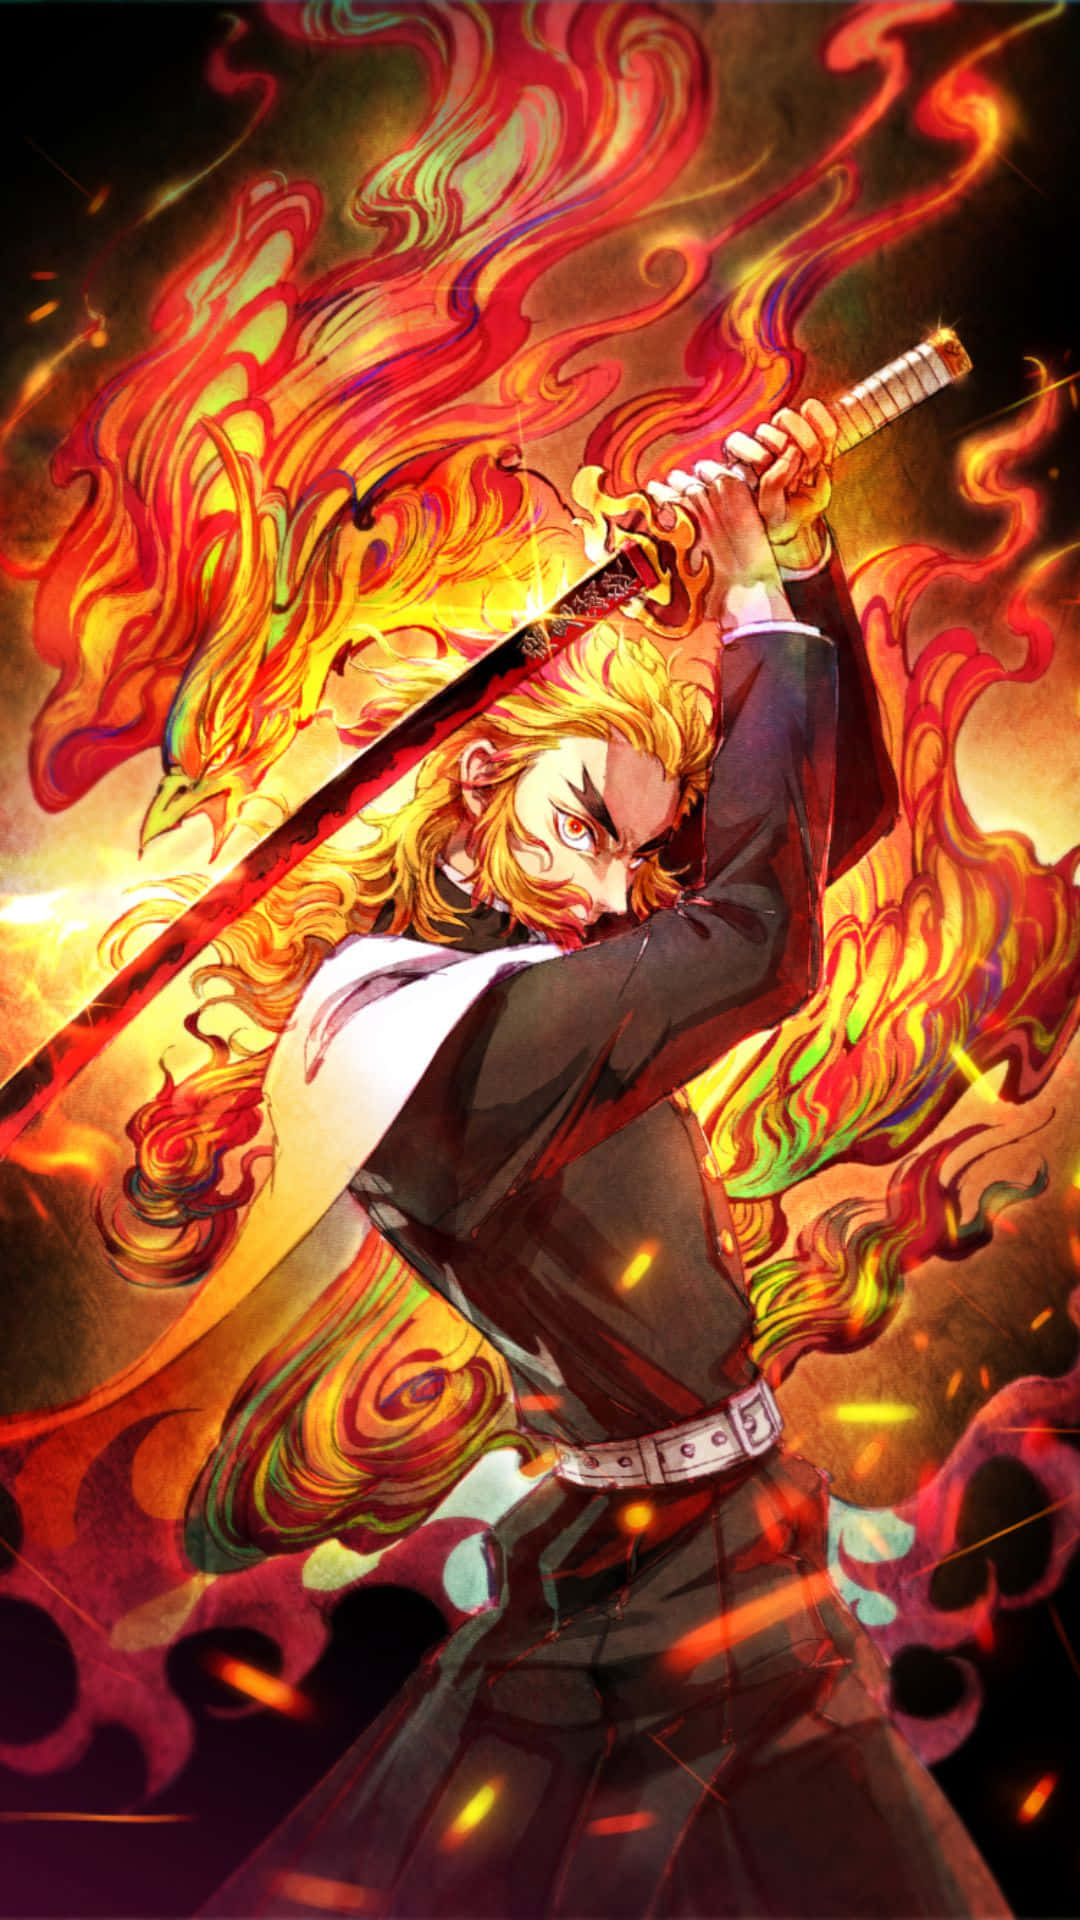 Fiery Guardian of the Demon Slayer Corps - Rengoku Kyojuro Wallpaper